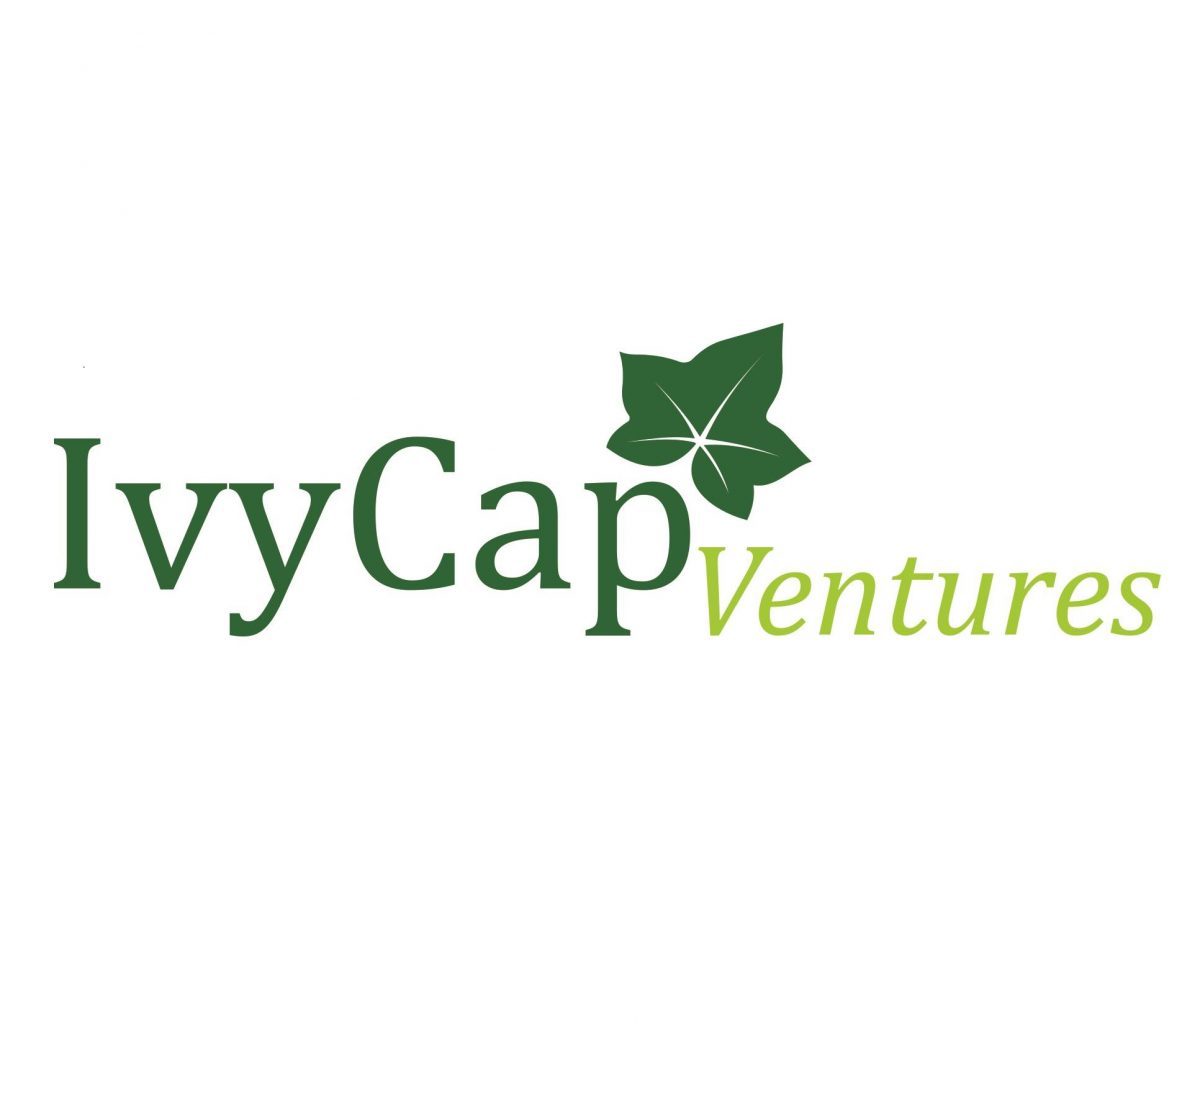 IvyCap ventures